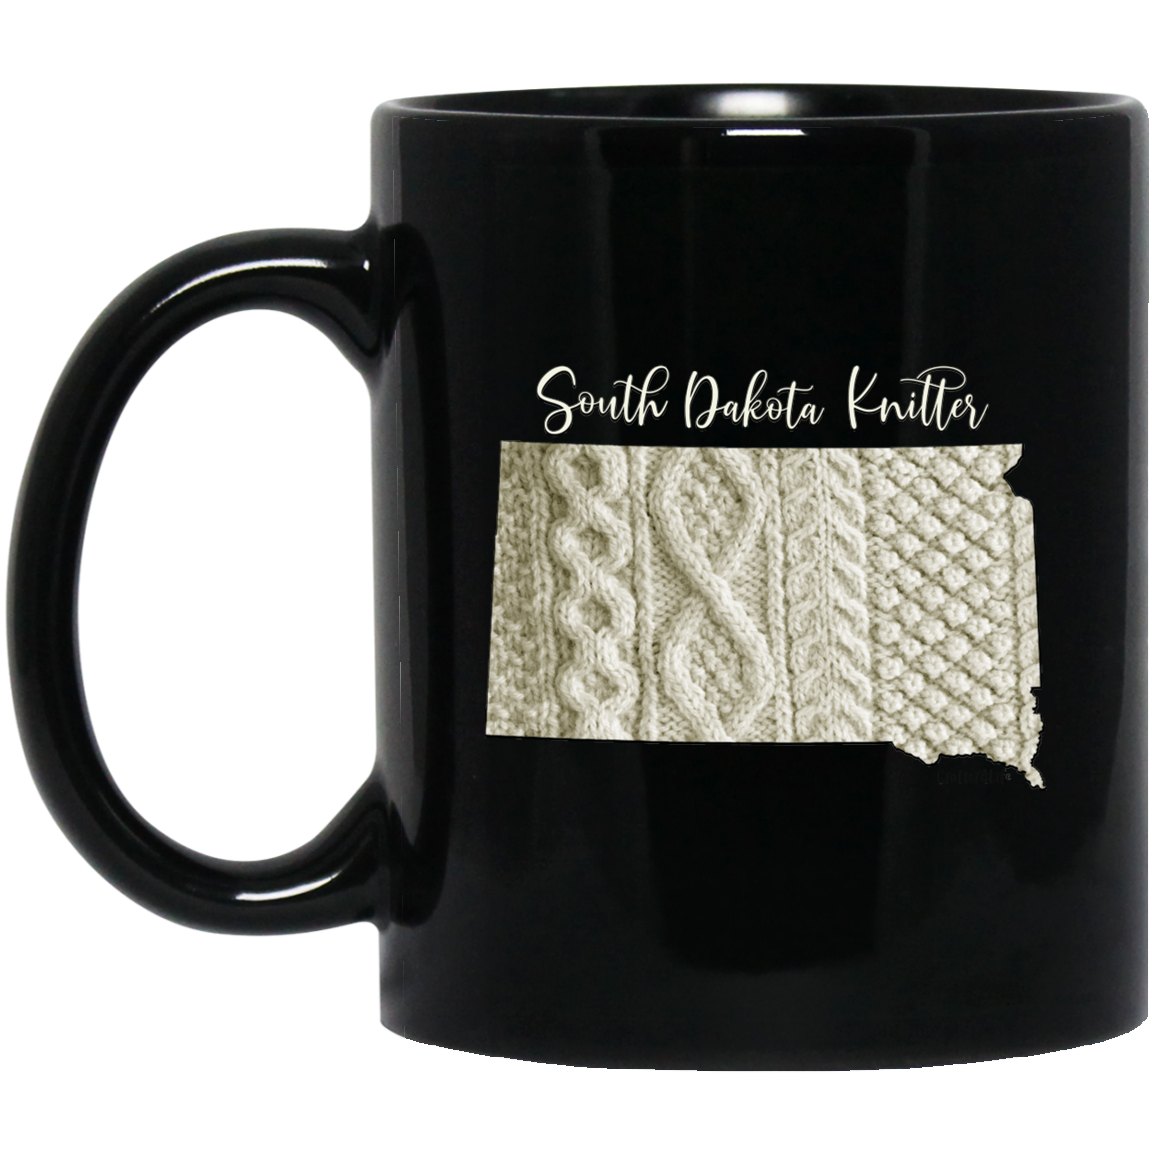 South Dakota Knitter Mugs